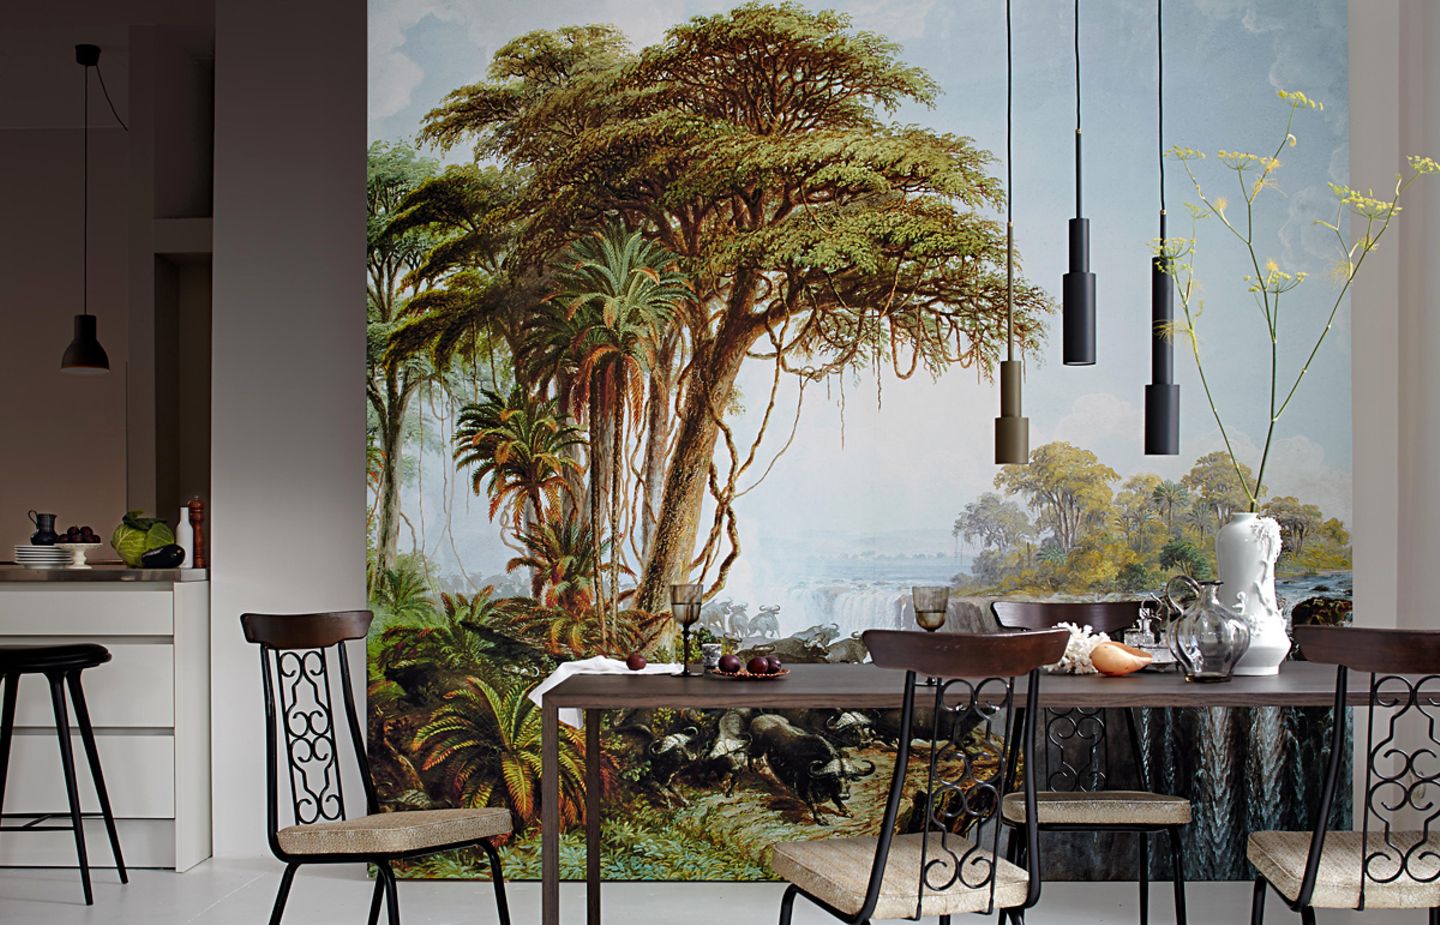 Offene Wohnküche mit großer Fototapete im Dschungel-Look an der Wand, davor steht ein Esstisch mit vier Stühlen